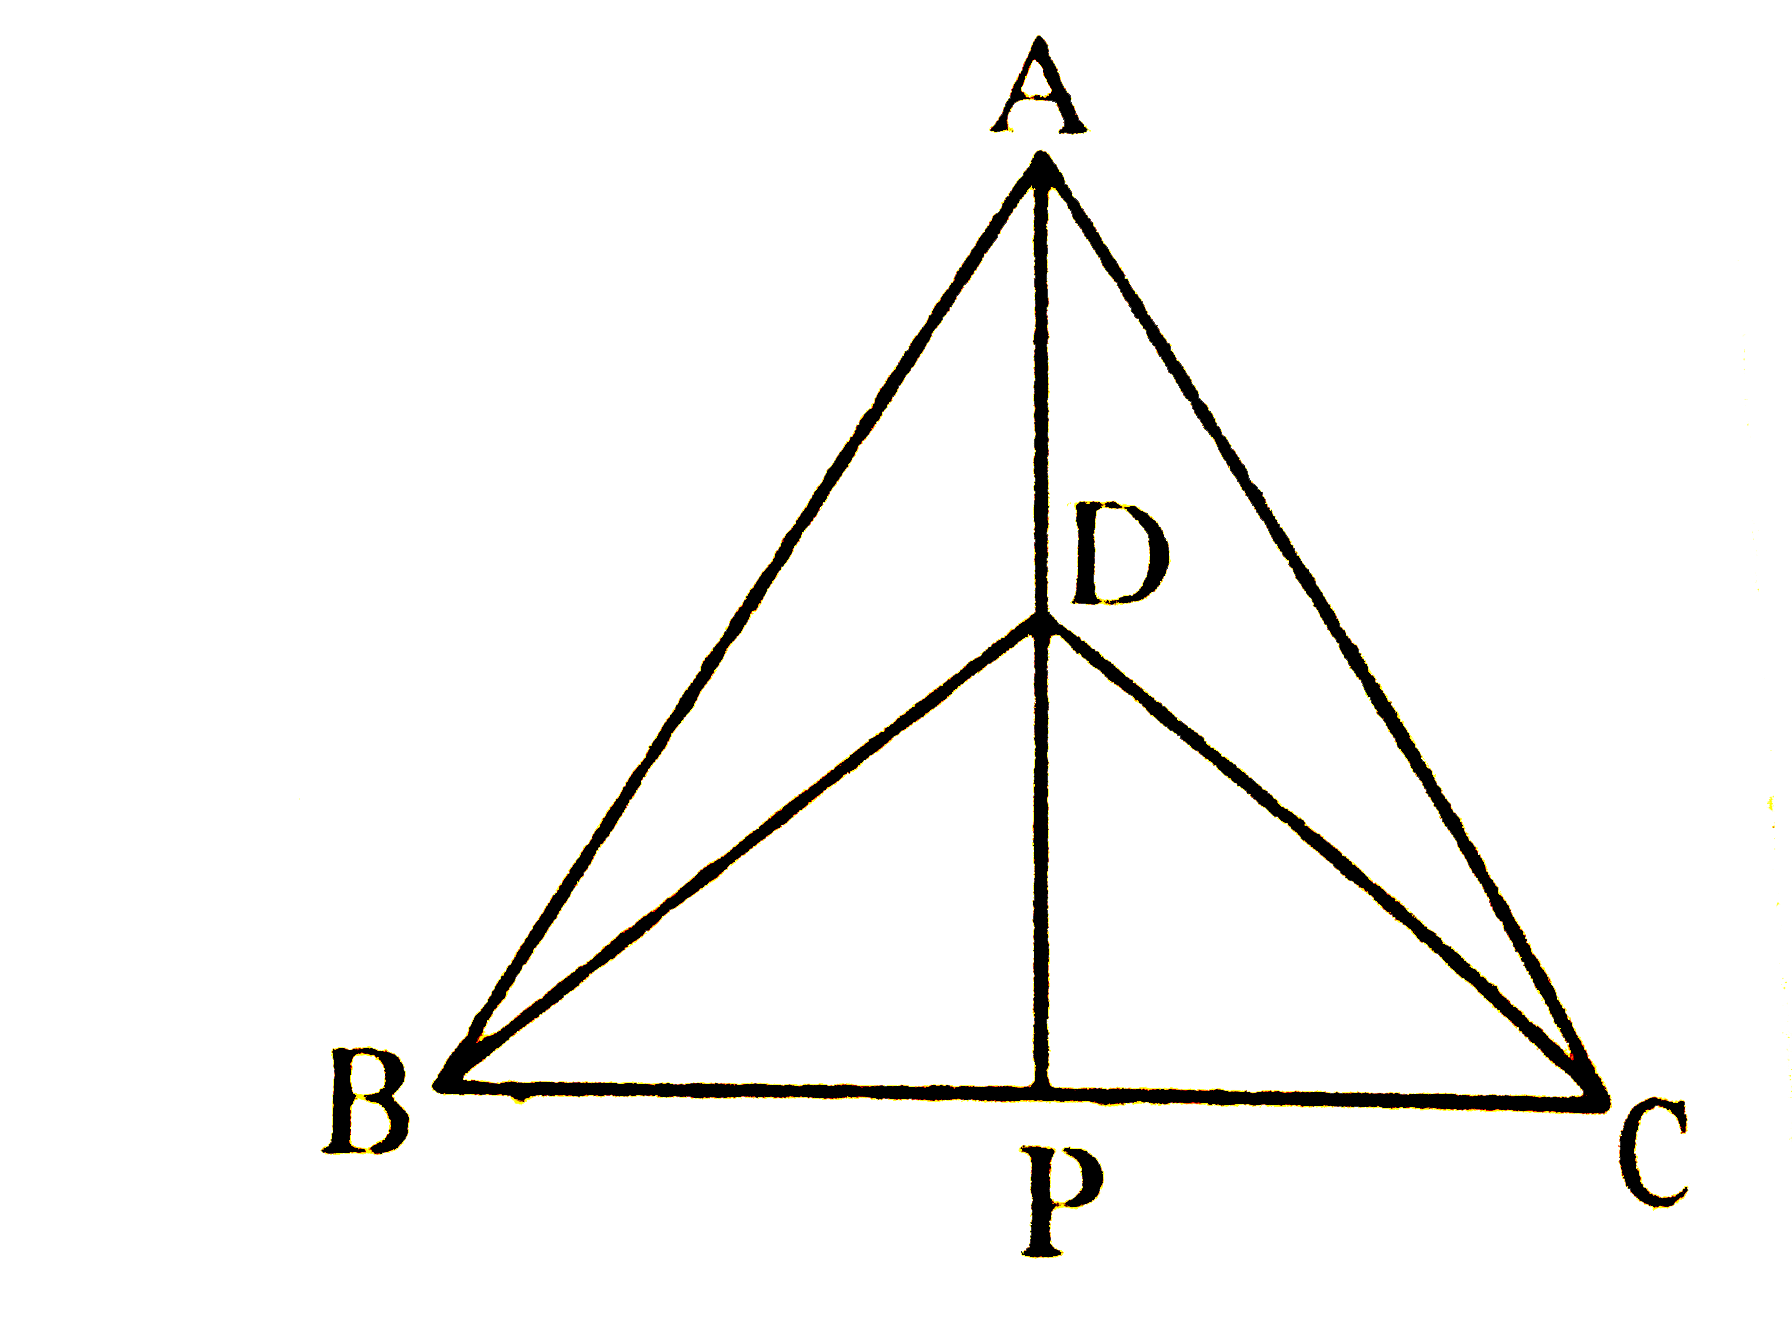 DeltaABC और DeltaDBC एक ही आधार BC पर बने दो समद्विबाहु त्रिभुज इस प्रकार हैं कि A और D भुजा BC के एक ही ओर स्थित हैं (देखिए चित्र) | यदि AD बढ़ाने पर BC को P पर प्रतिच्छेद करें, तो दर्शाइए कि      AP कोण A और कोण D दोनों को समद्विभाजित करता है |